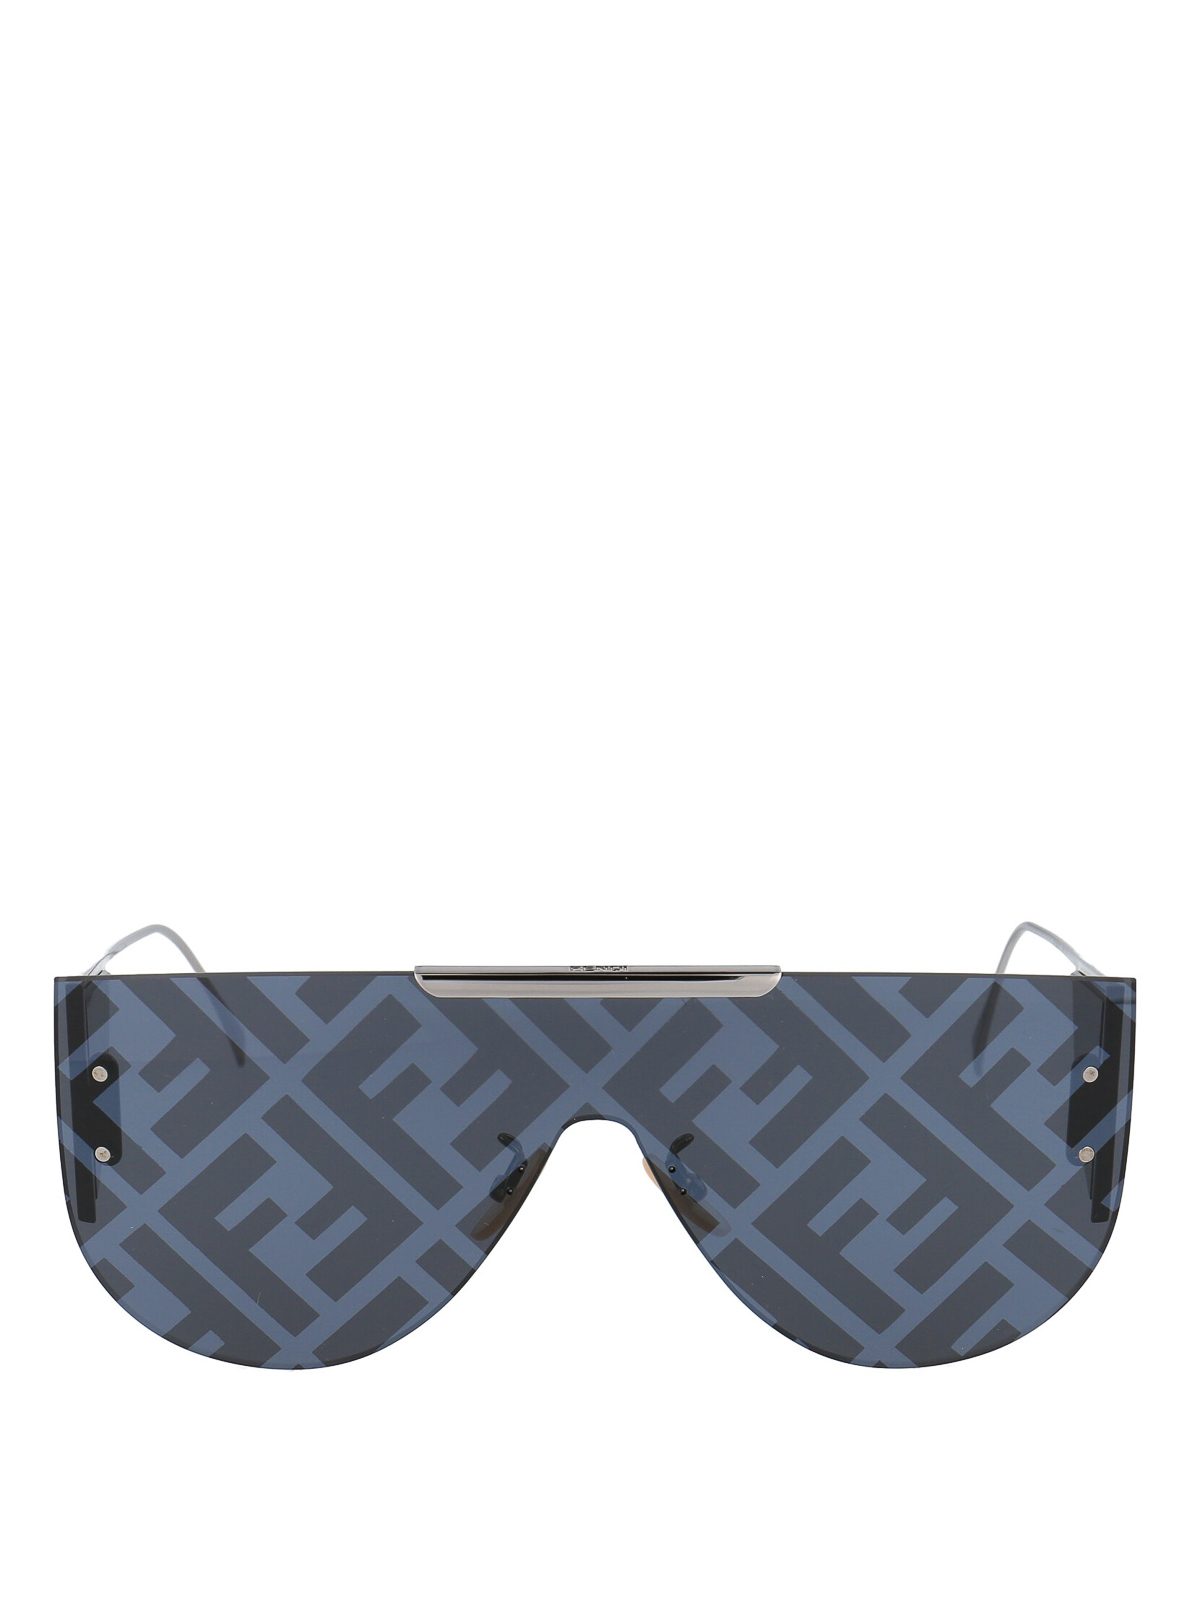 Sunglasses Fendi - FF printed lens mask sunglasses - FFM0093SGUAMD